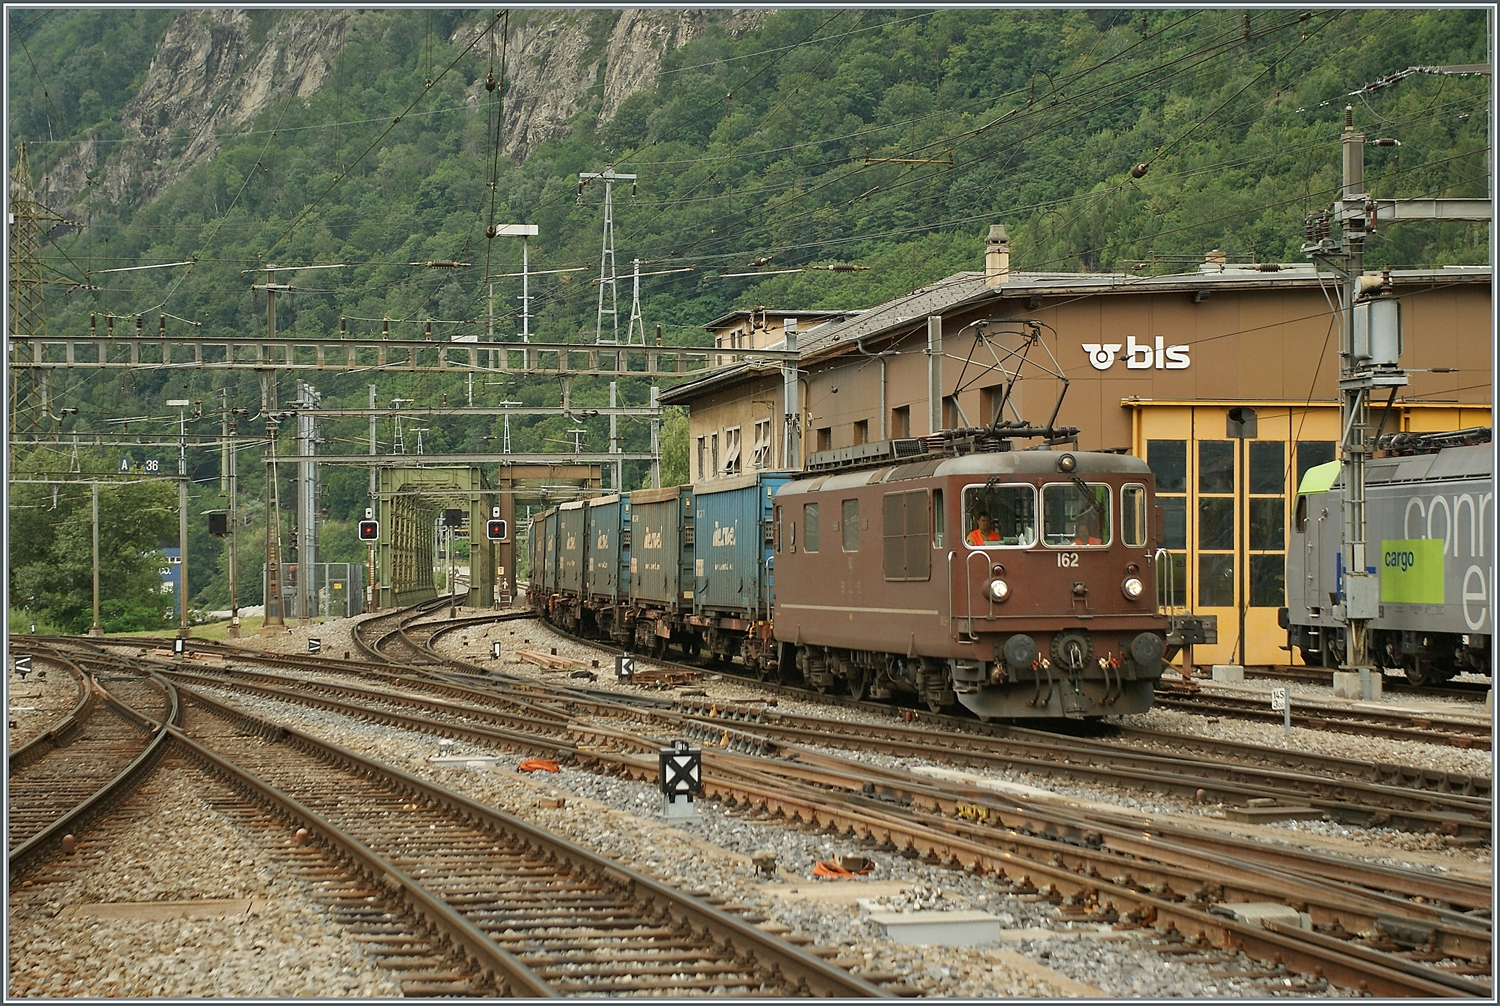 BLS Re 4/4 161- 162  Prototypen 1964, als Ae 4/4 II 261- 262 abgeliefert; die Re 4/4 162  Court  erreicht mit einem Güterzug von der Löschberg Bahn kommend den Bahnhof Brig. 

29. Juni 2011 